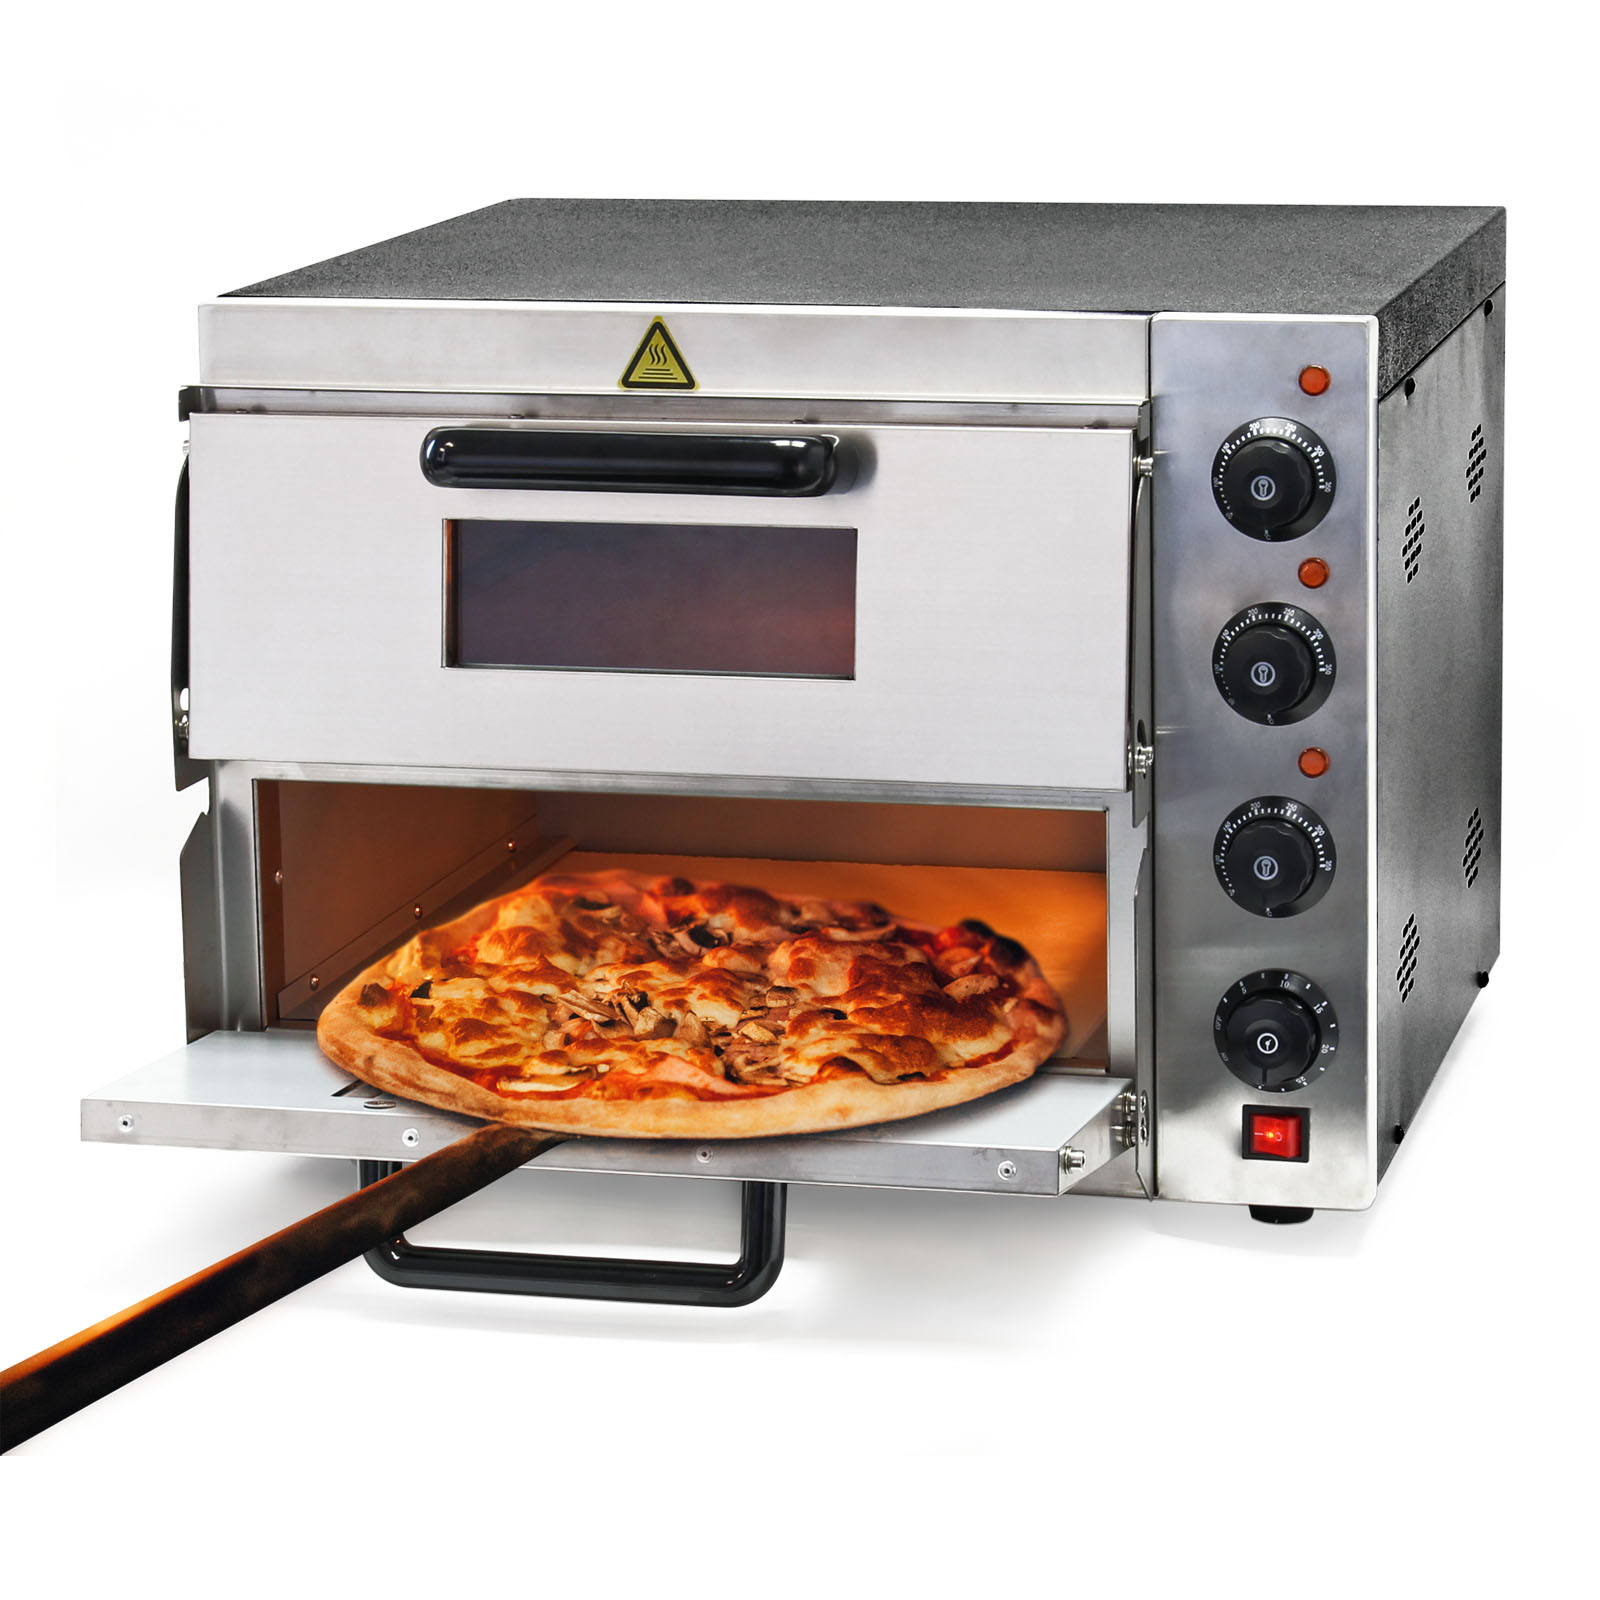 Forno Fornetto Cuoci Pizza 30cm Macchina per Preparare Pizze 1450 Watt Nero  | LGV Shopping